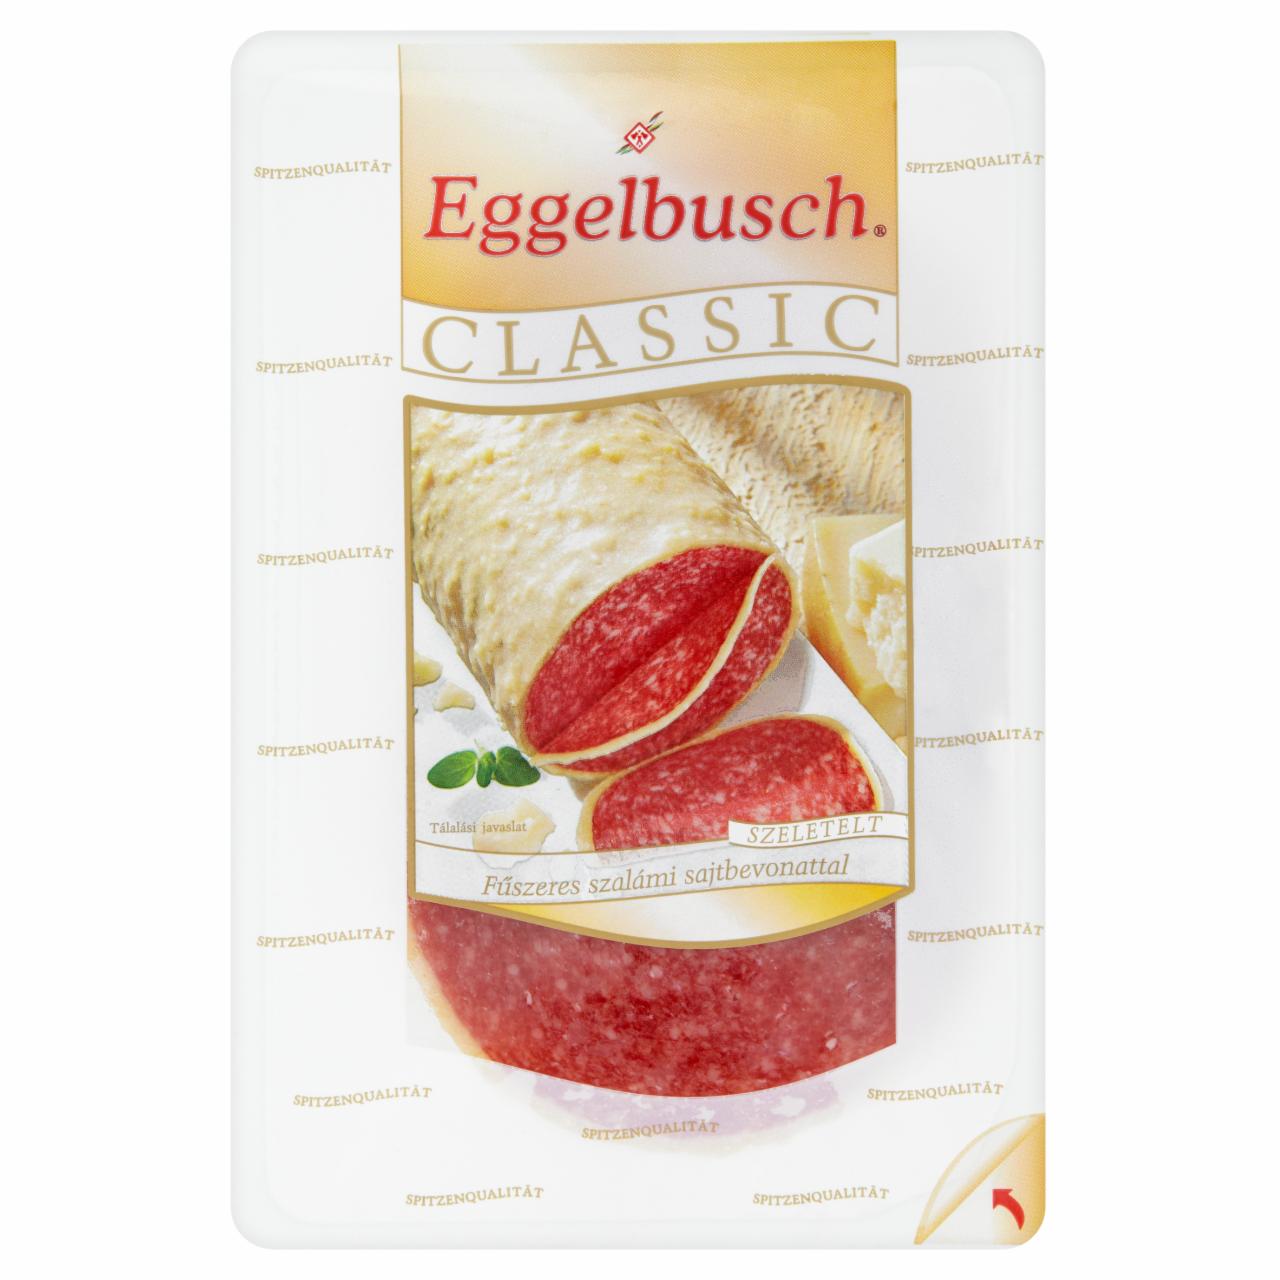 Képek - Eggelbusch Classic szeletelt fűszeres szalámi sajtbevonattal 100 g